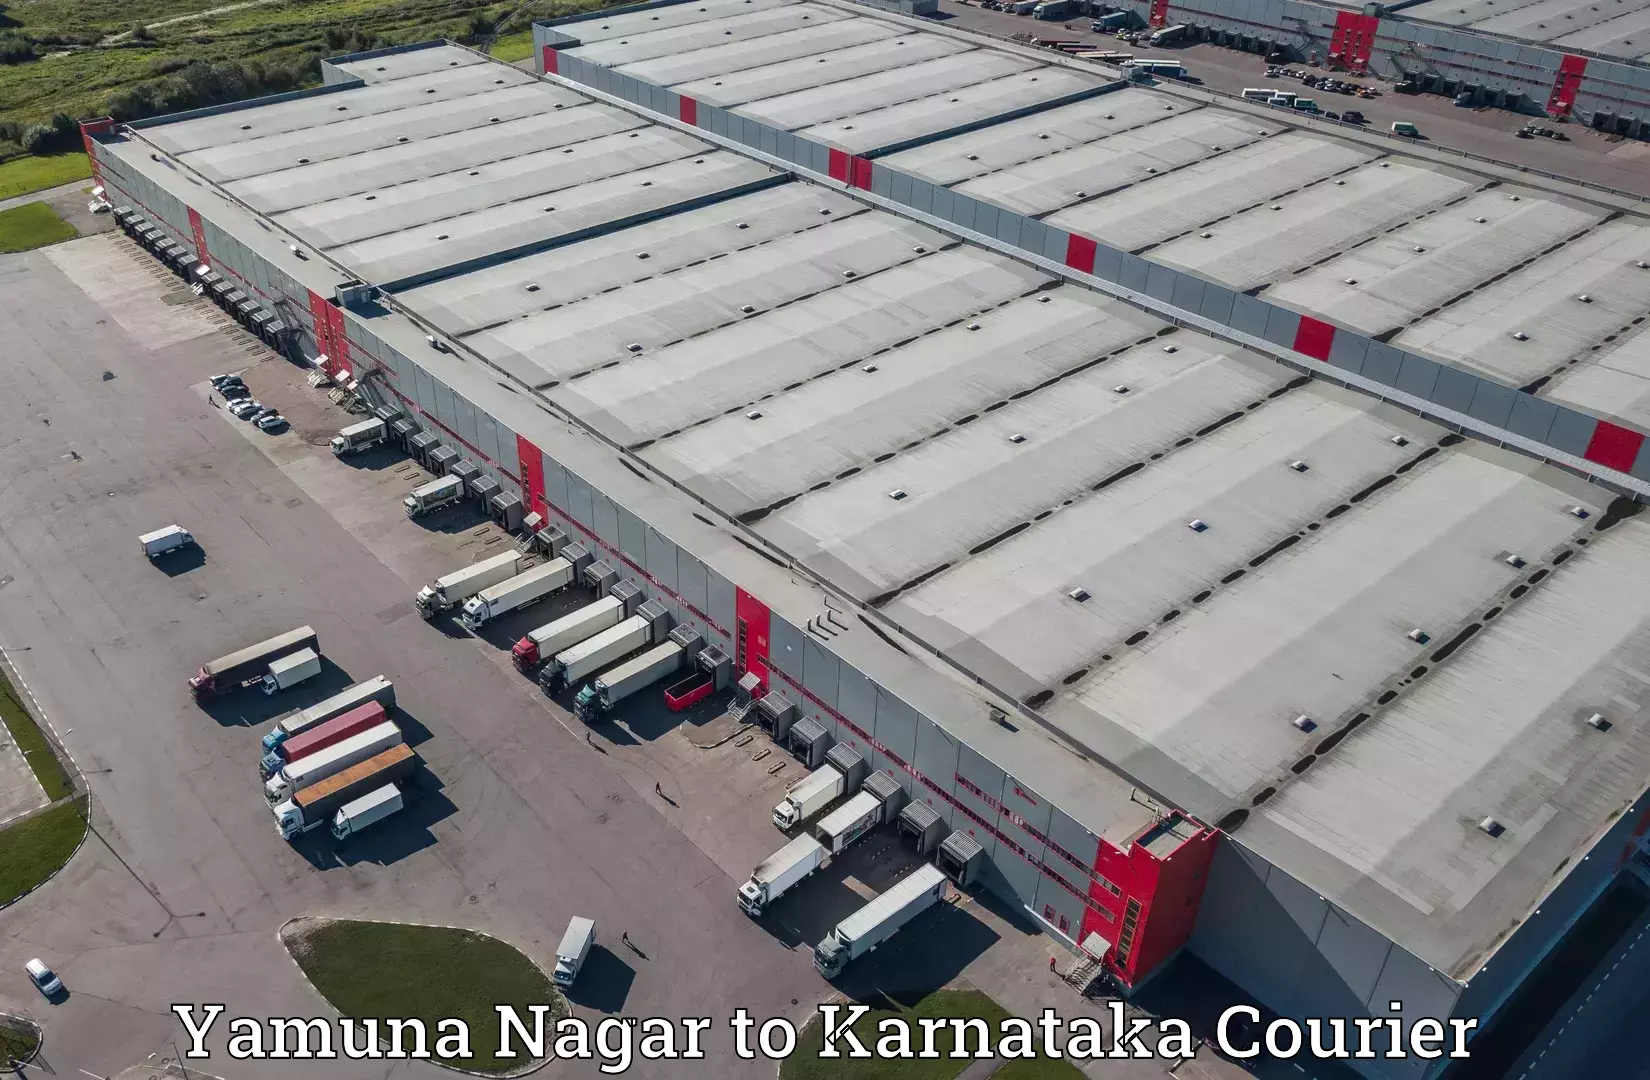 Next-day freight services Yamuna Nagar to NIT Srinivasanagar